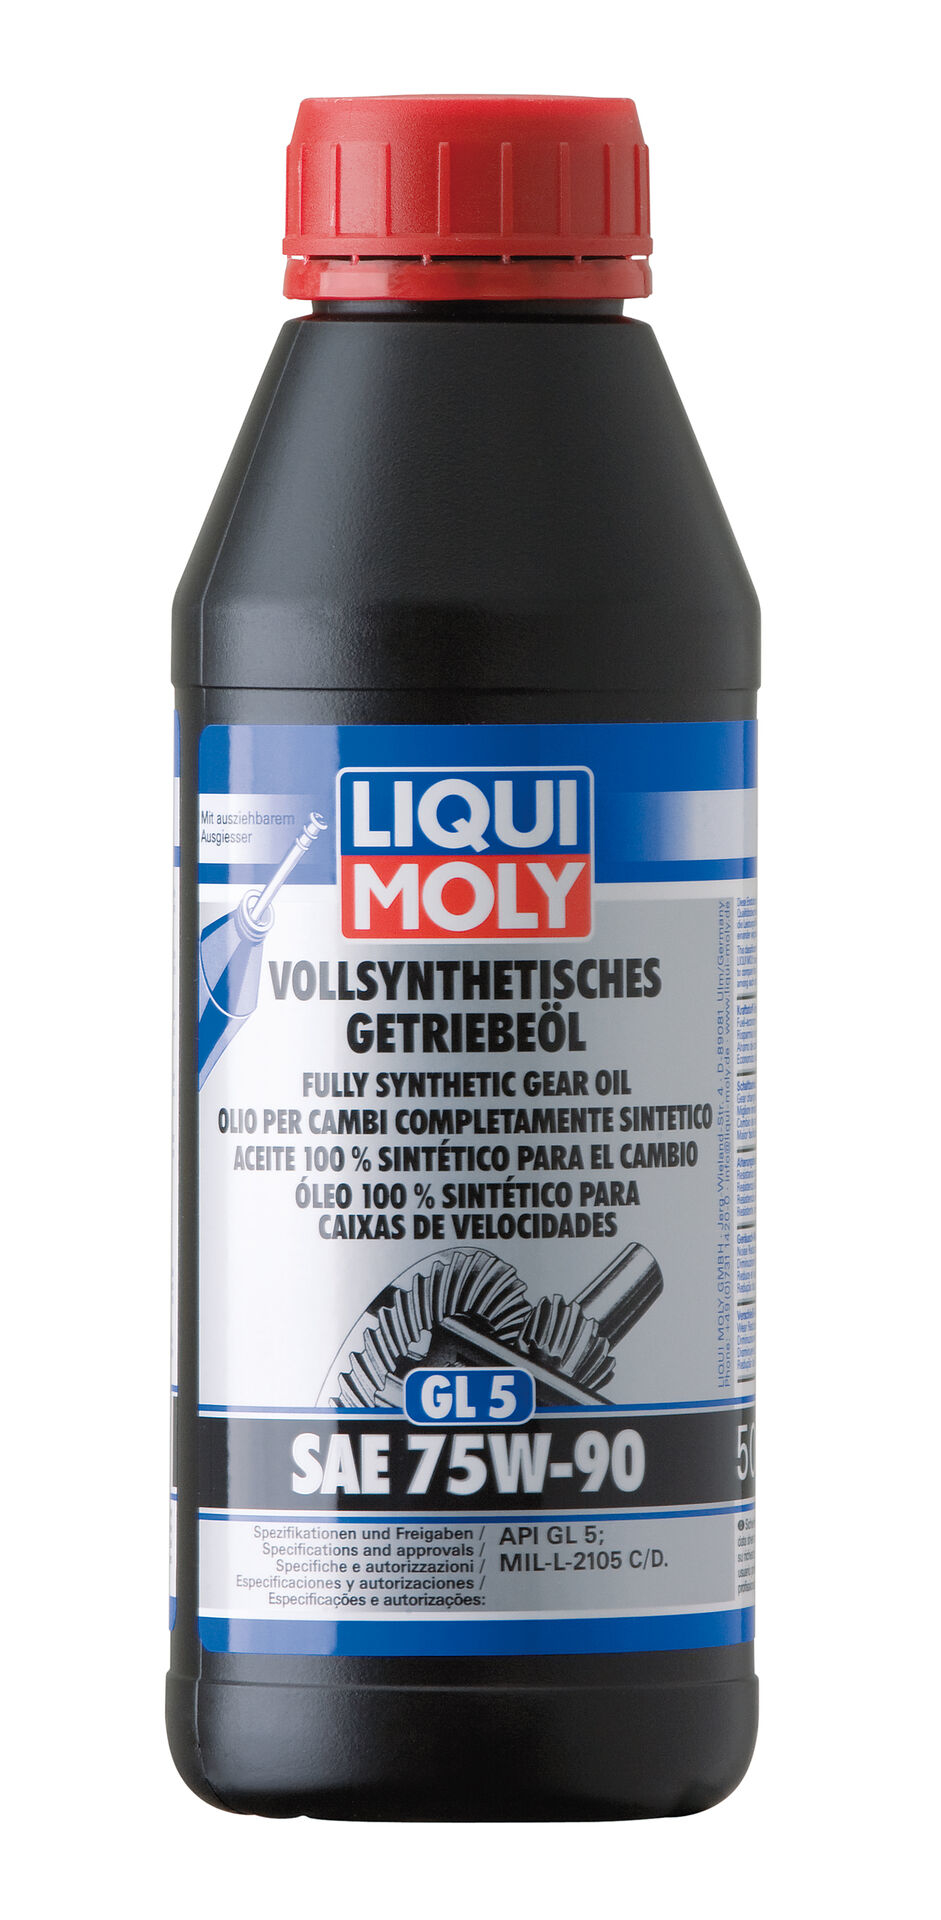 LIQUI-MOLY Getriebeöl (GL 5) SAE 75W-90 500 ml vollsyhnthetisch